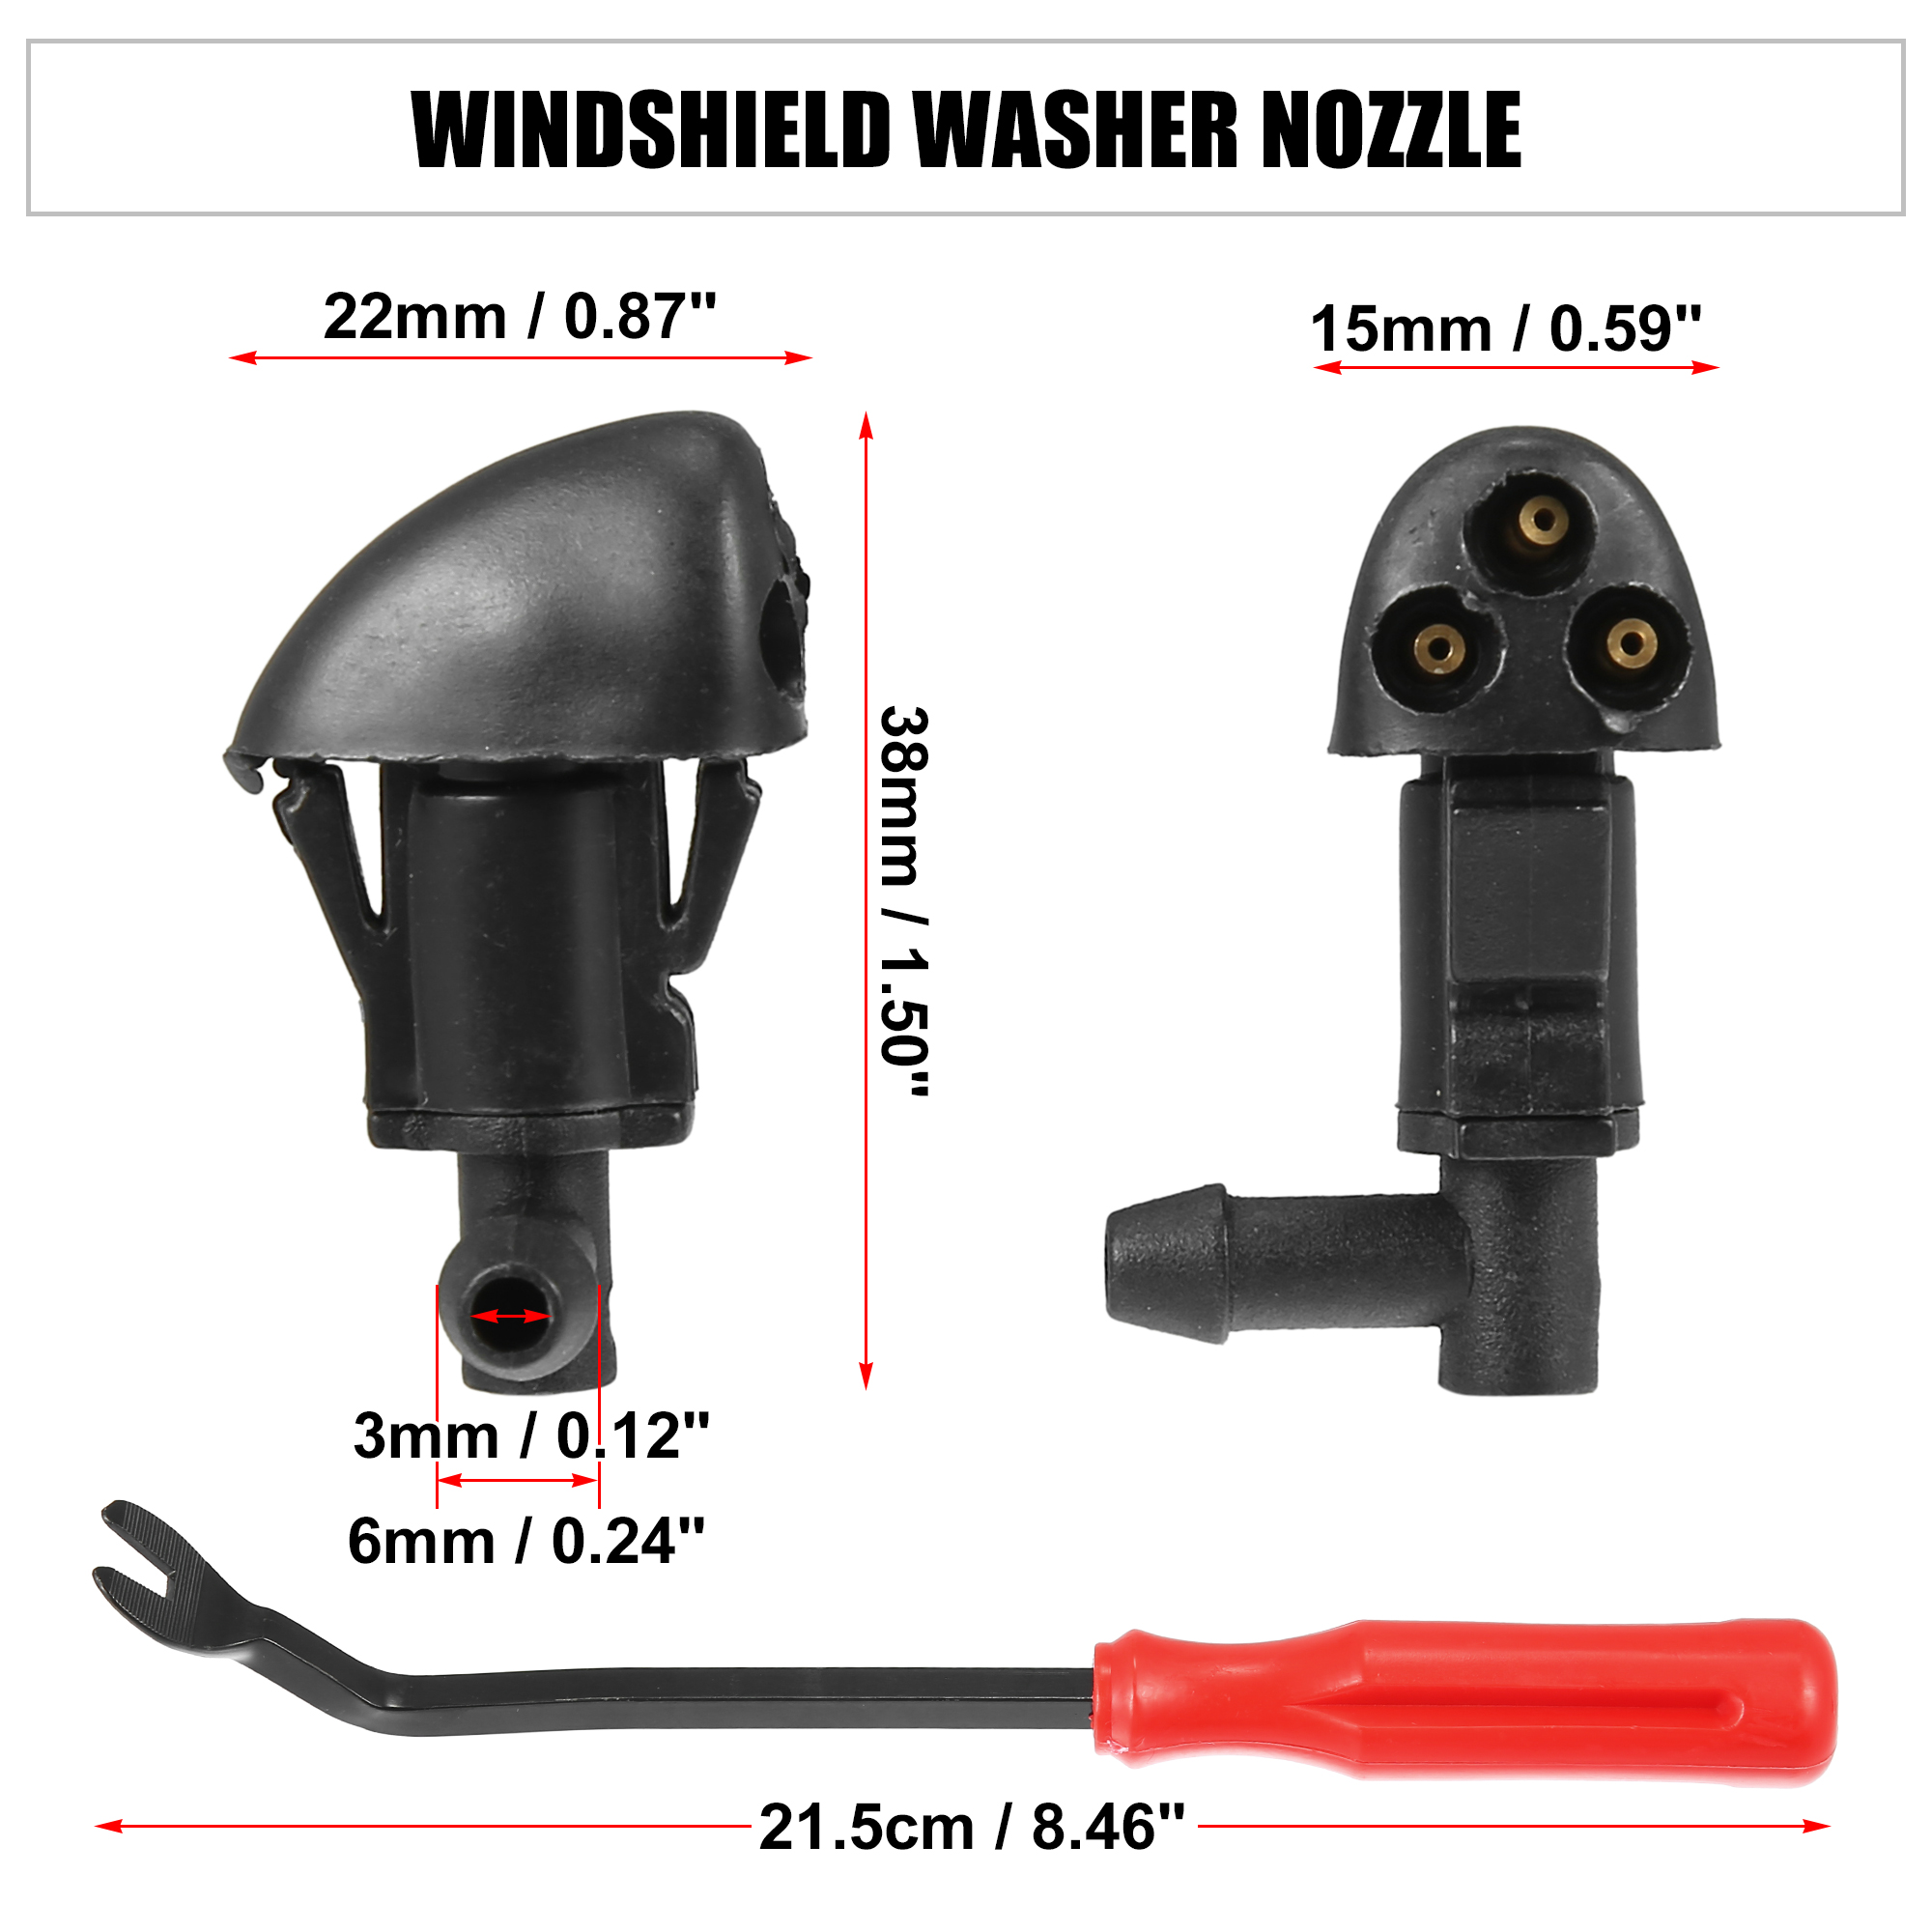 Unique Bargains 3pcs Front Windshield Washer Nozzle Kit 94556605 for Chevrolet Cruze